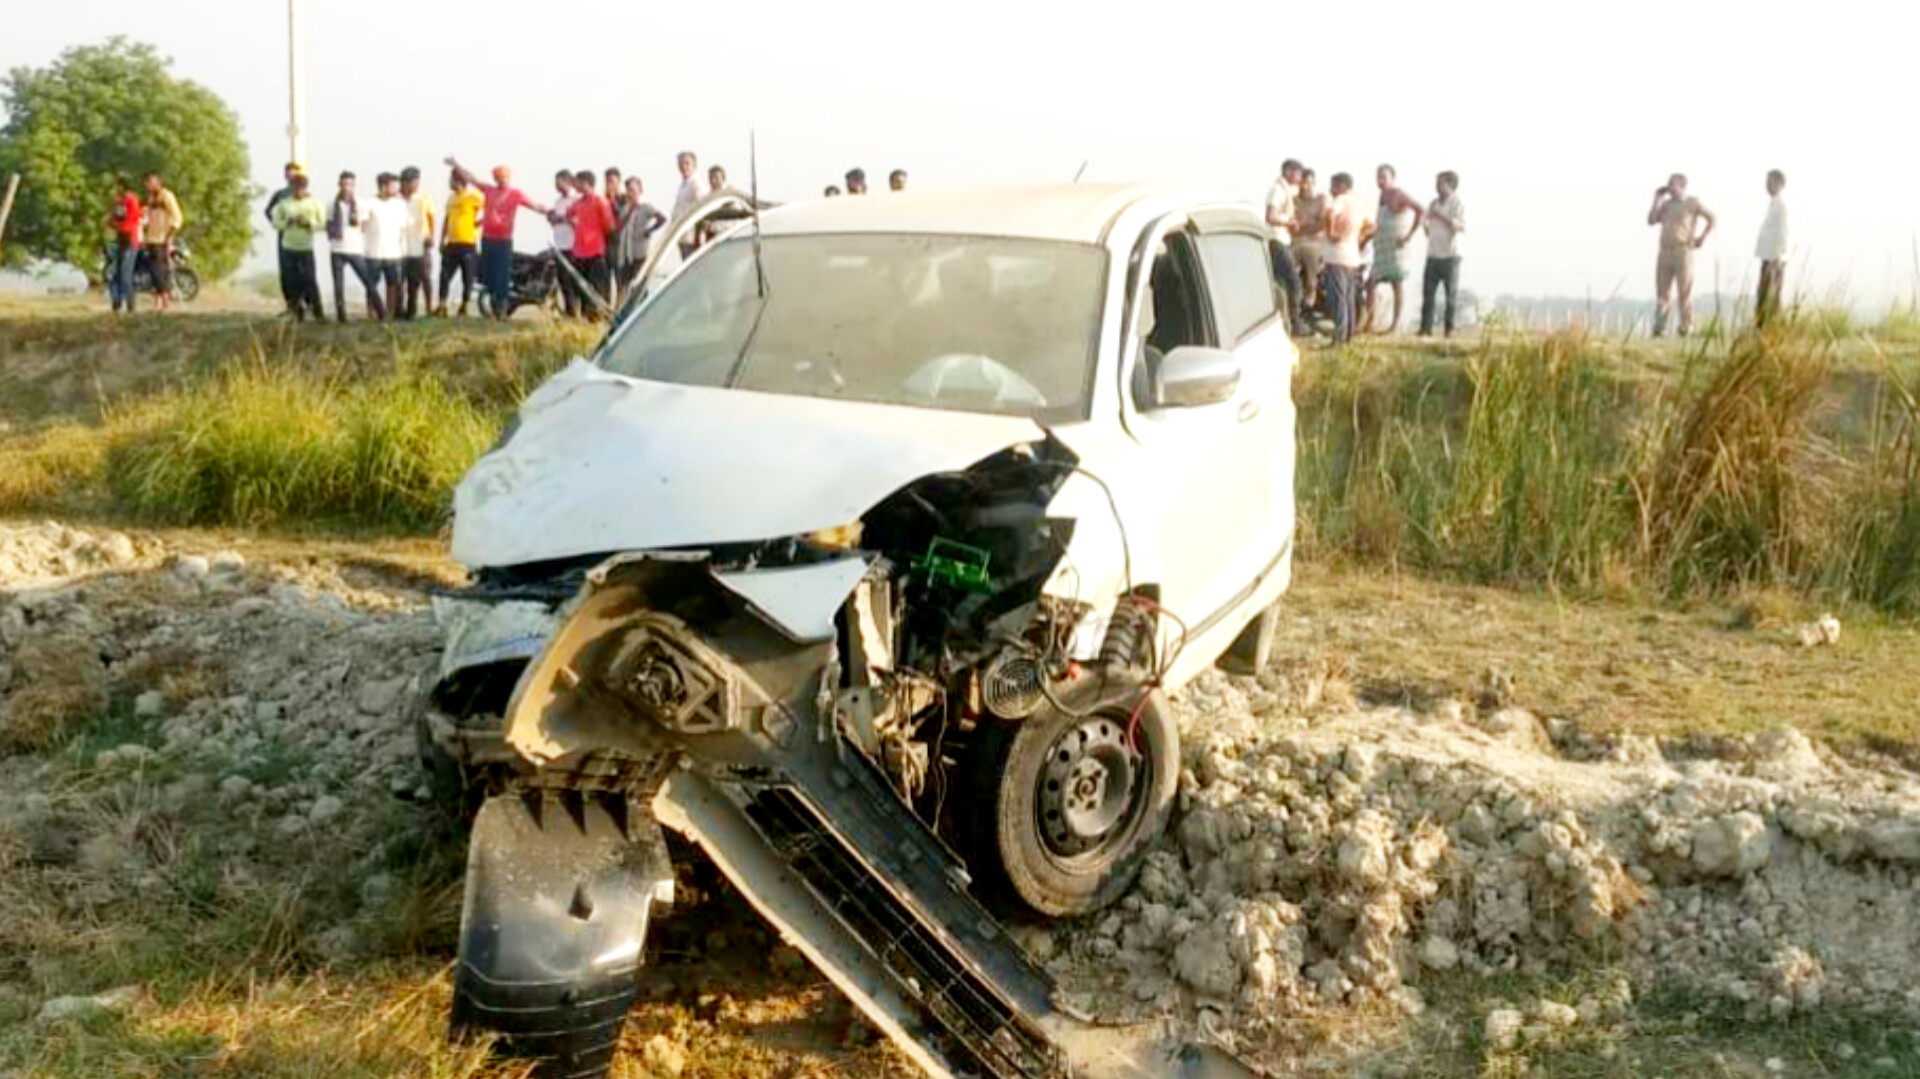 Kanpur News: चलते-चलते गेंद की तरह हवा में उड़ने लगी कार, देखने वाले हक्का बक्का, एक की मौत